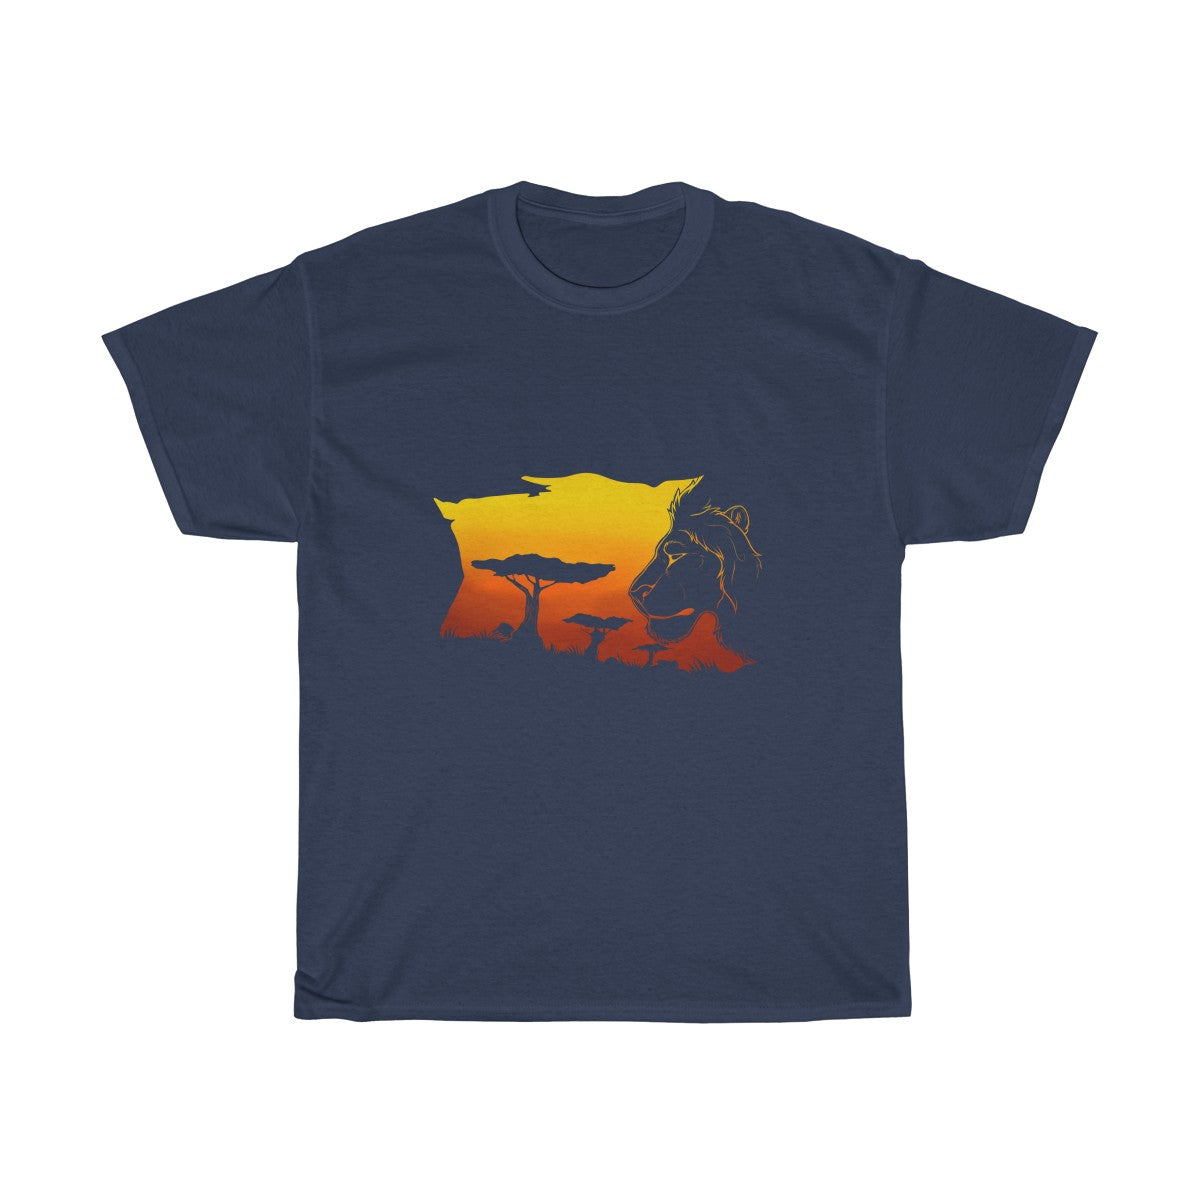 Sunset Savannah - T-Shirt T-Shirt Dire Creatures Navy Blue S 